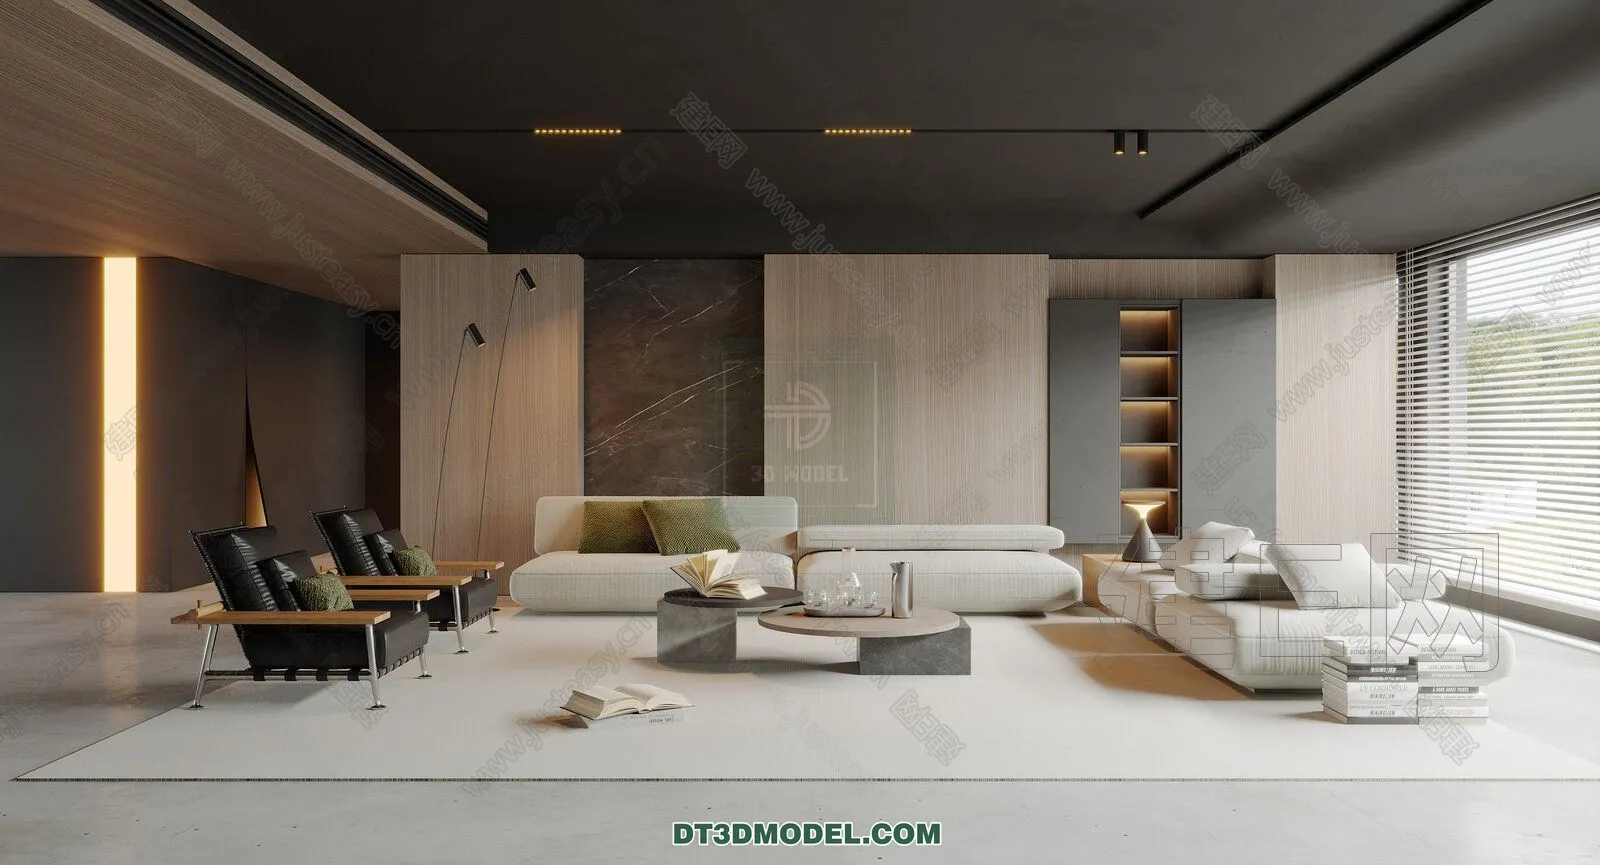 CORONA LIVING ROOM 3D MODELS – 090